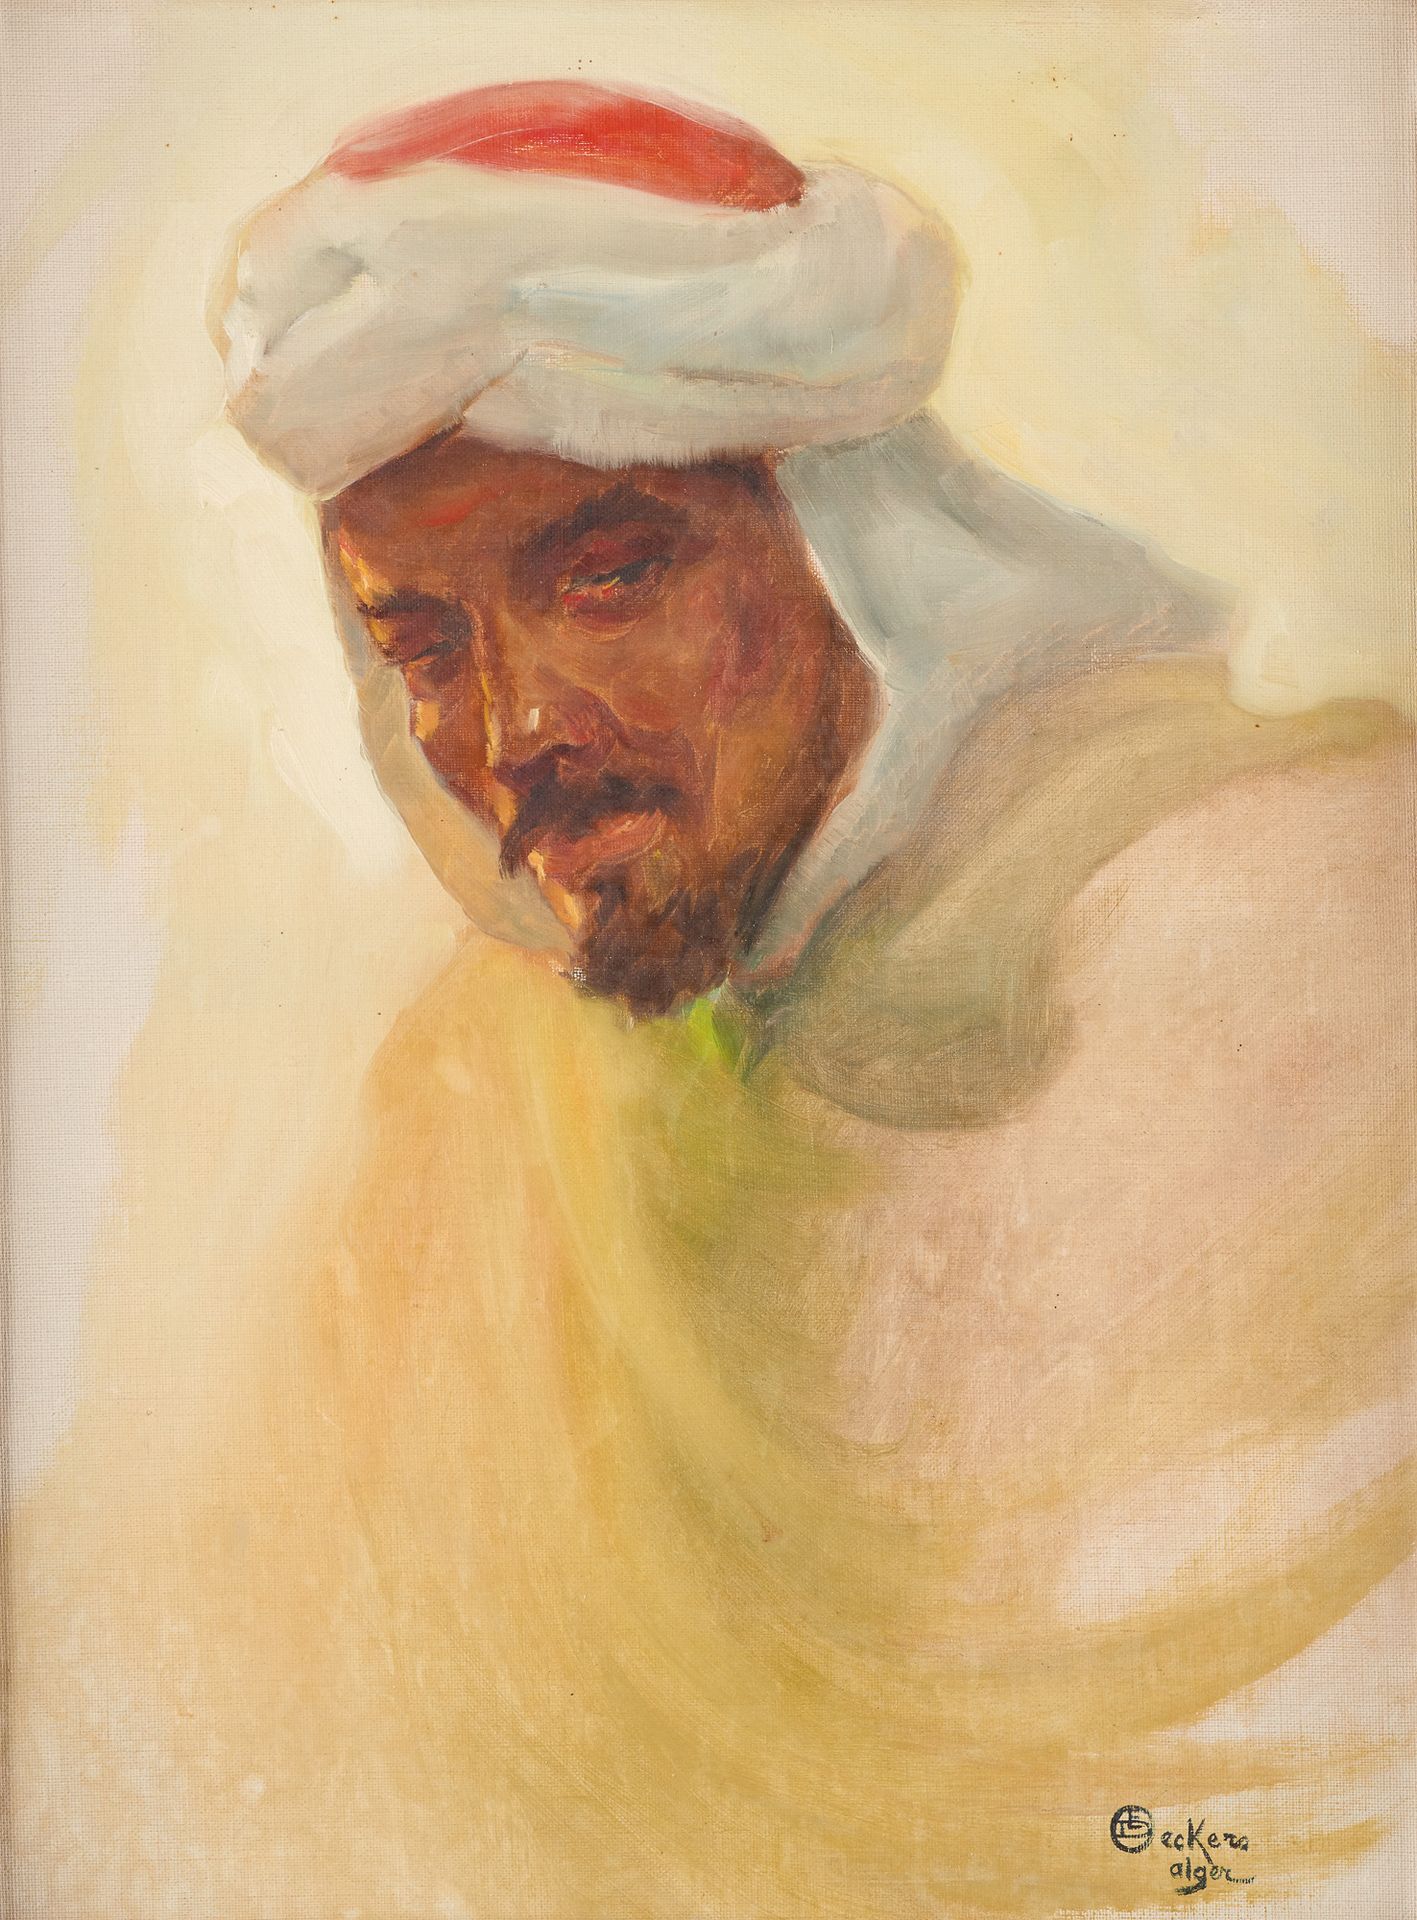 Émile DECKERS École belge (1885-1968) Öl auf Leinwand: Porträt eines Algeriers.
&hellip;